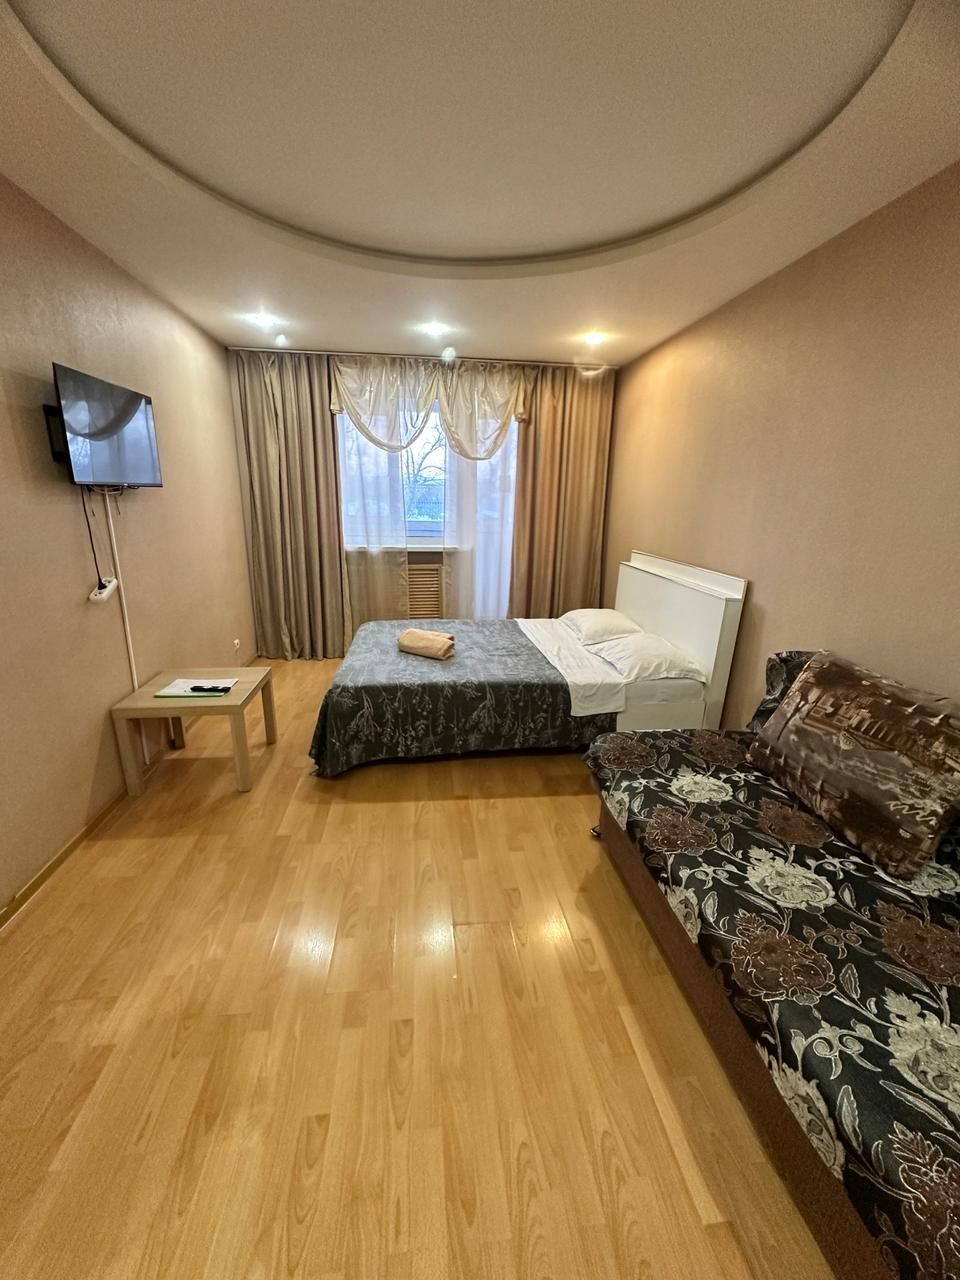 Продам 1 комнатная квартира  в районе Тайги 13300млн